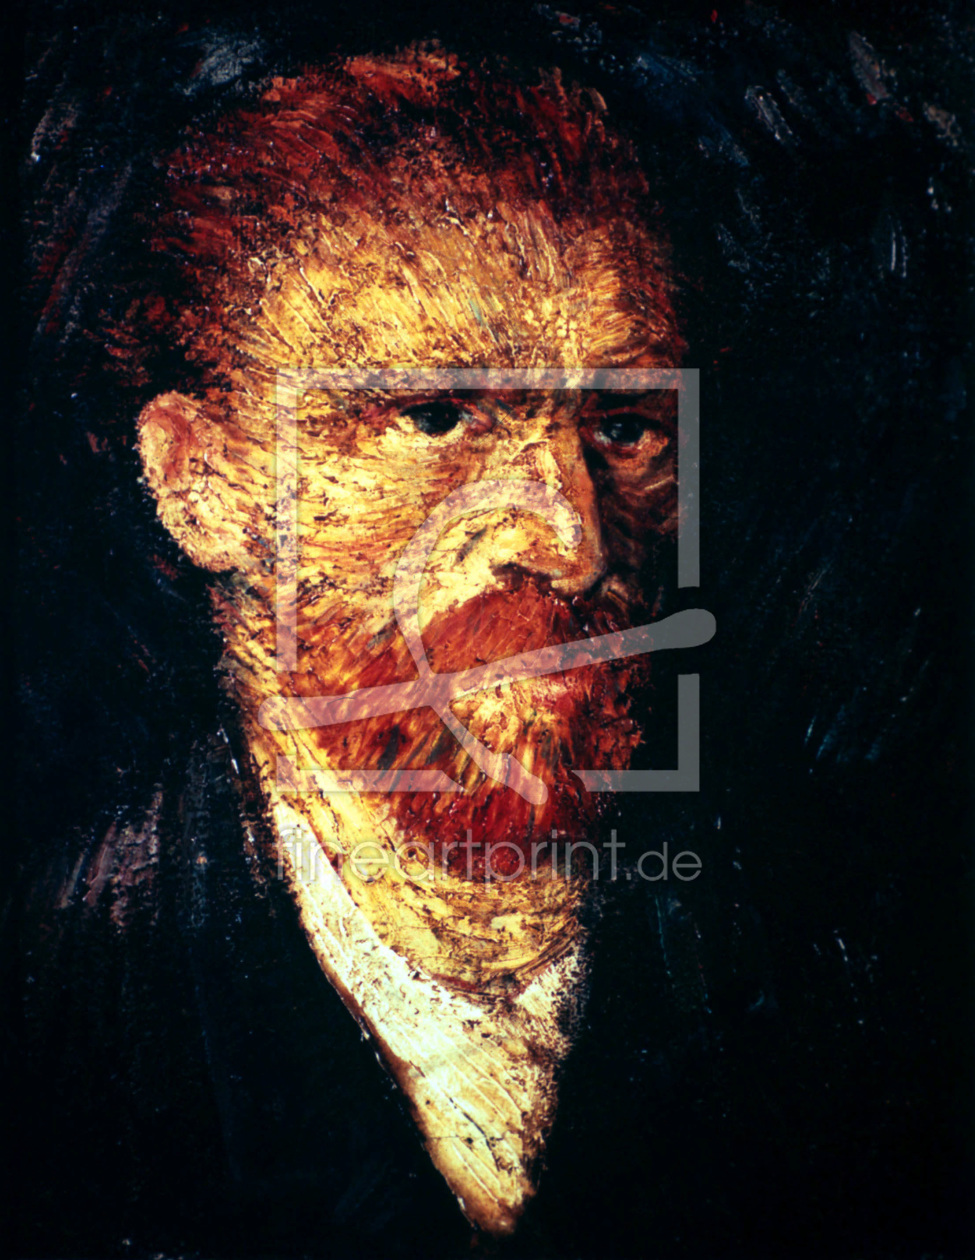 Bild-Nr.: 30003056 van Gogh / Self-portrait erstellt von van Gogh, Vincent